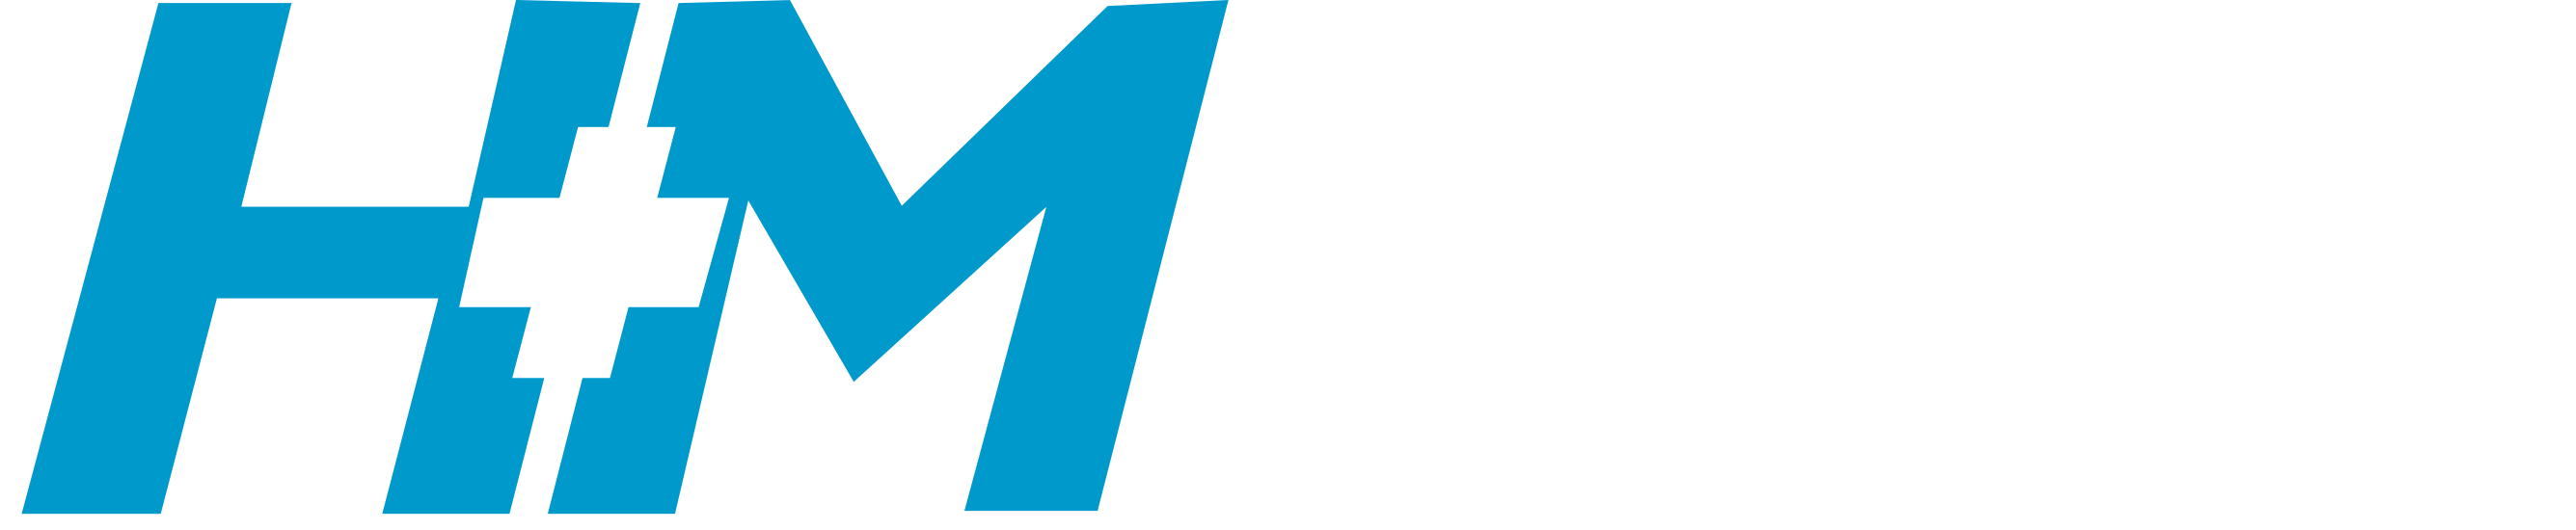 H&M Compressors & Pumps Ltd